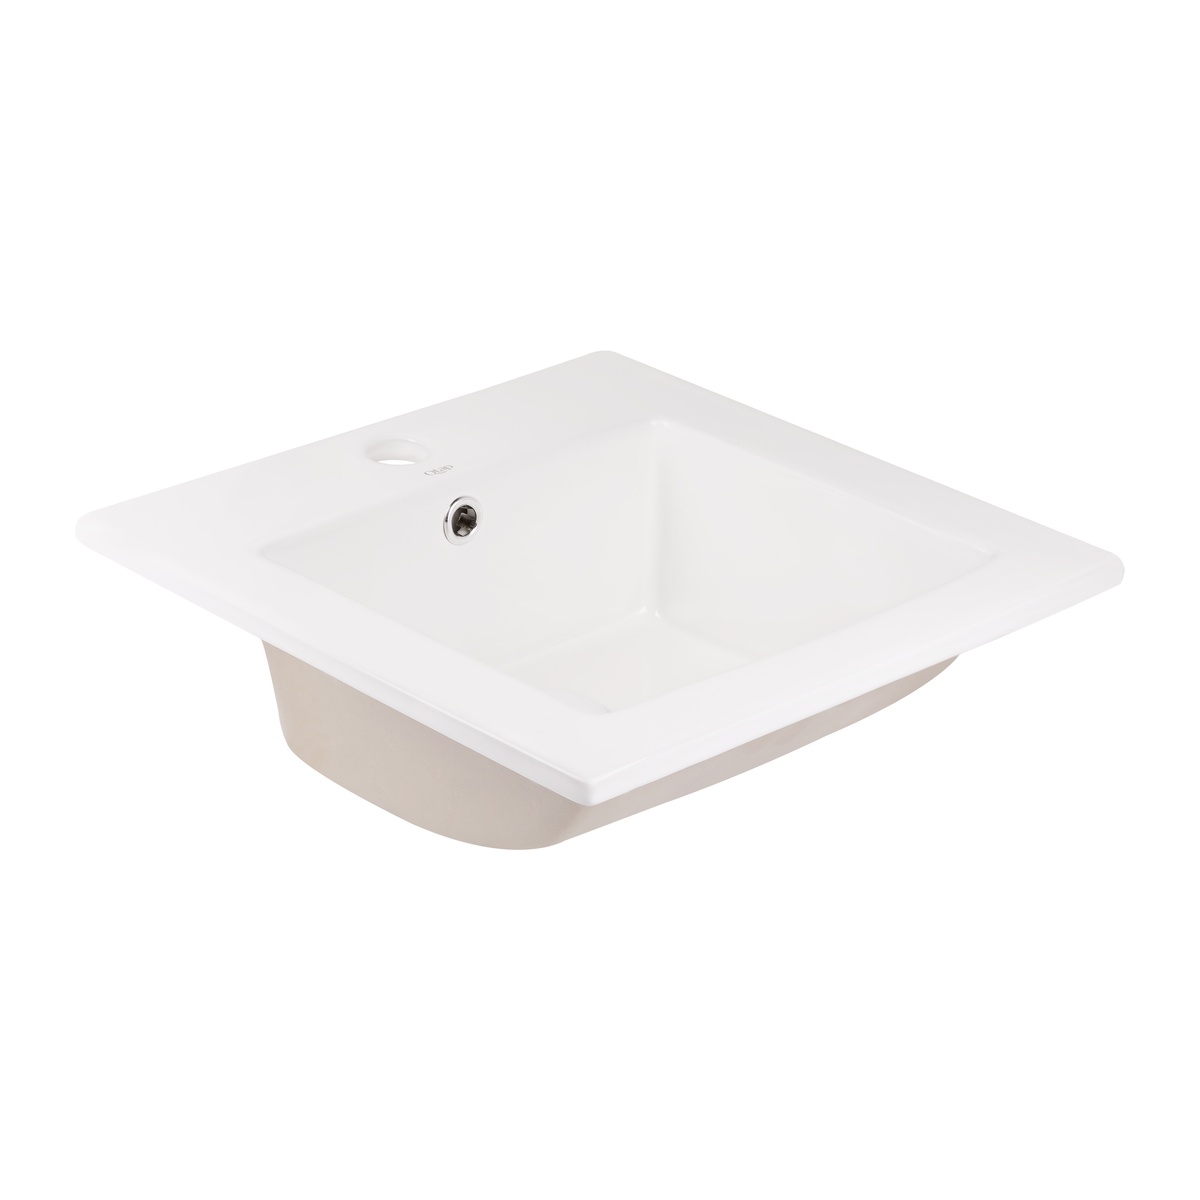 Раковина врезная для ванны на столешницу 415мм x 415мм Q-TAP Stork белый квадратная QT15116037W